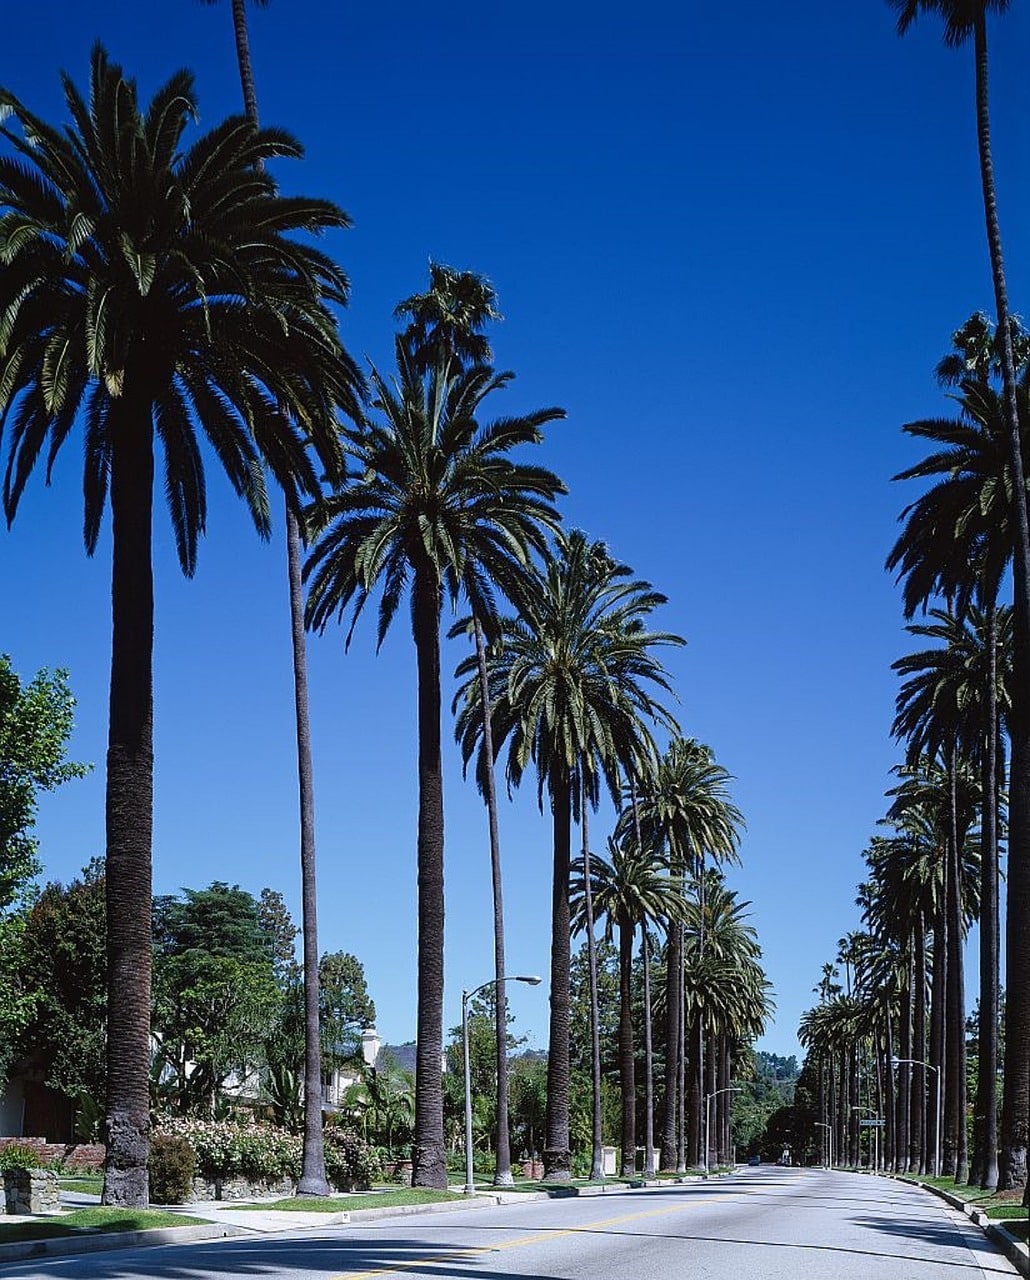 Beverly Hills mit seinen zahlreichen Palmen rechts und links an der Straße entlang.